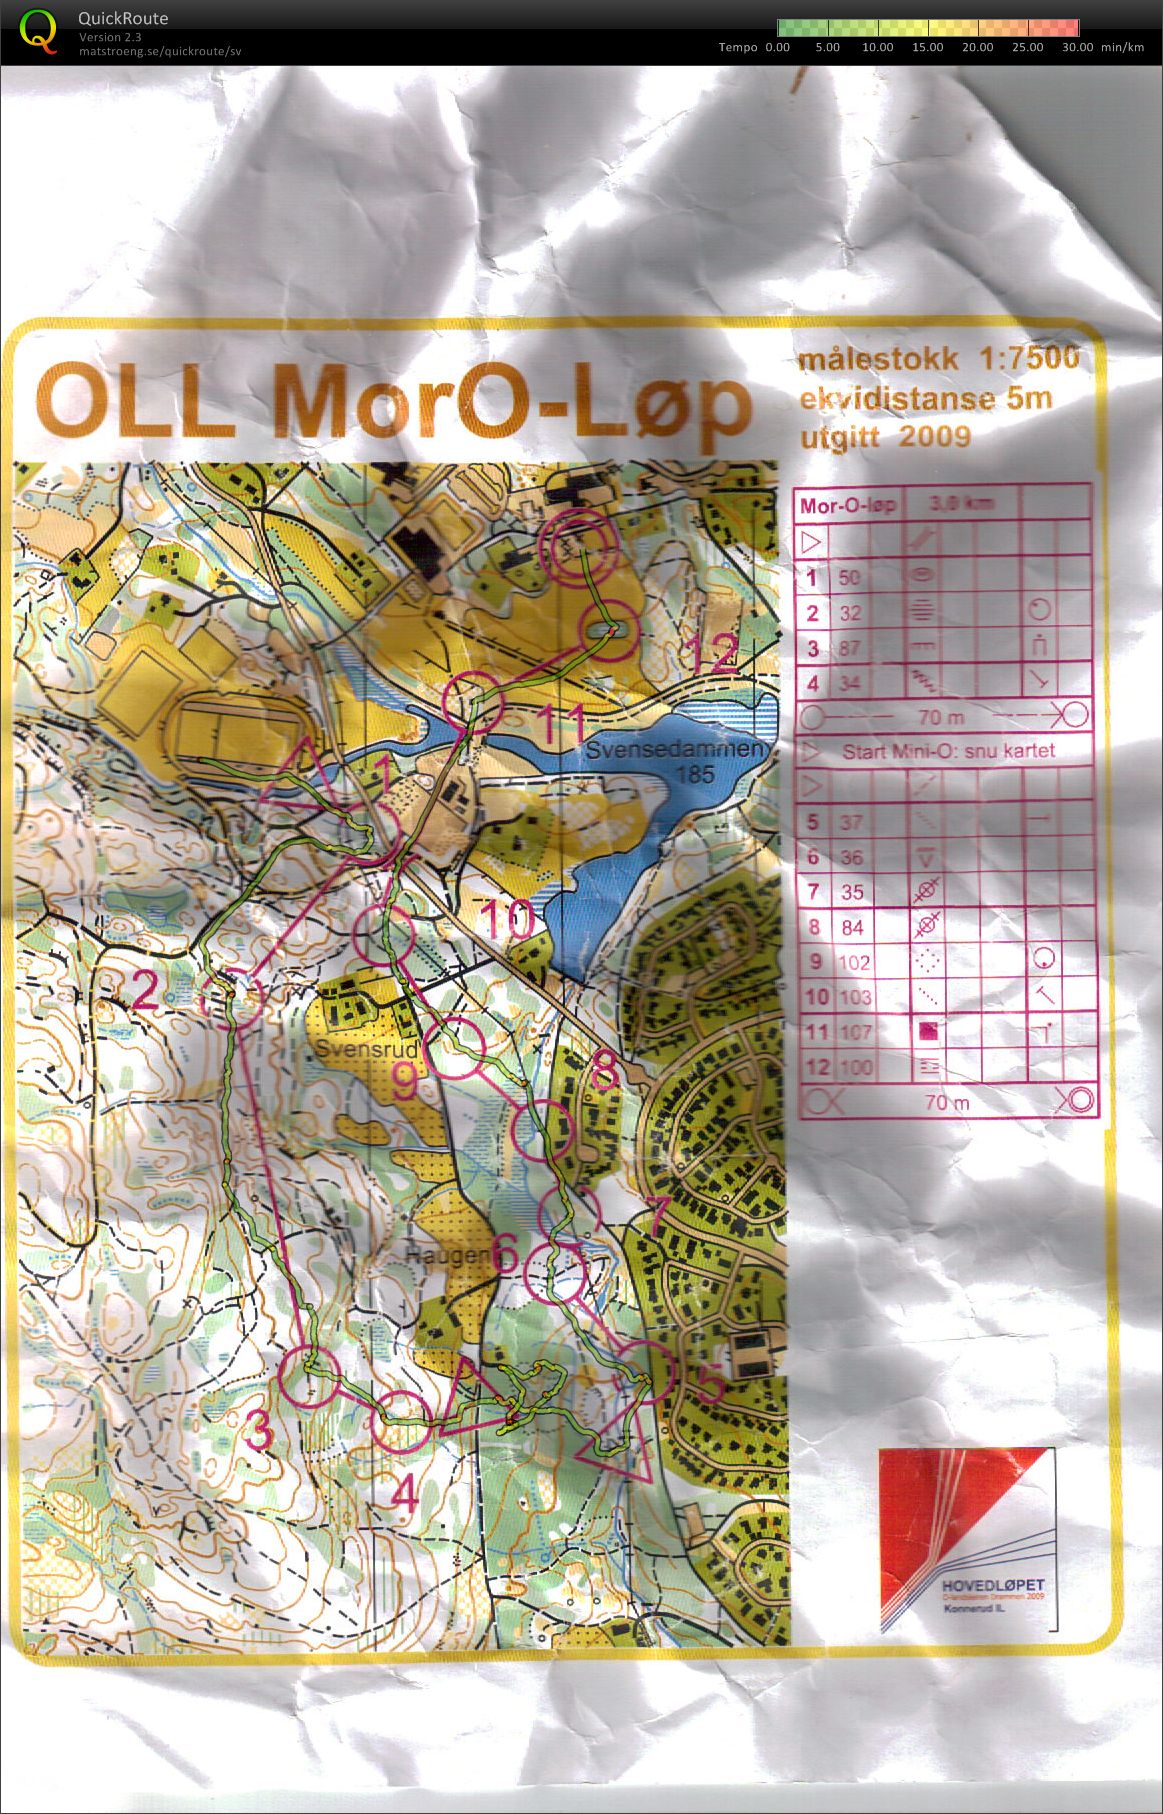 OLL MorO-løp  (11.08.2009)